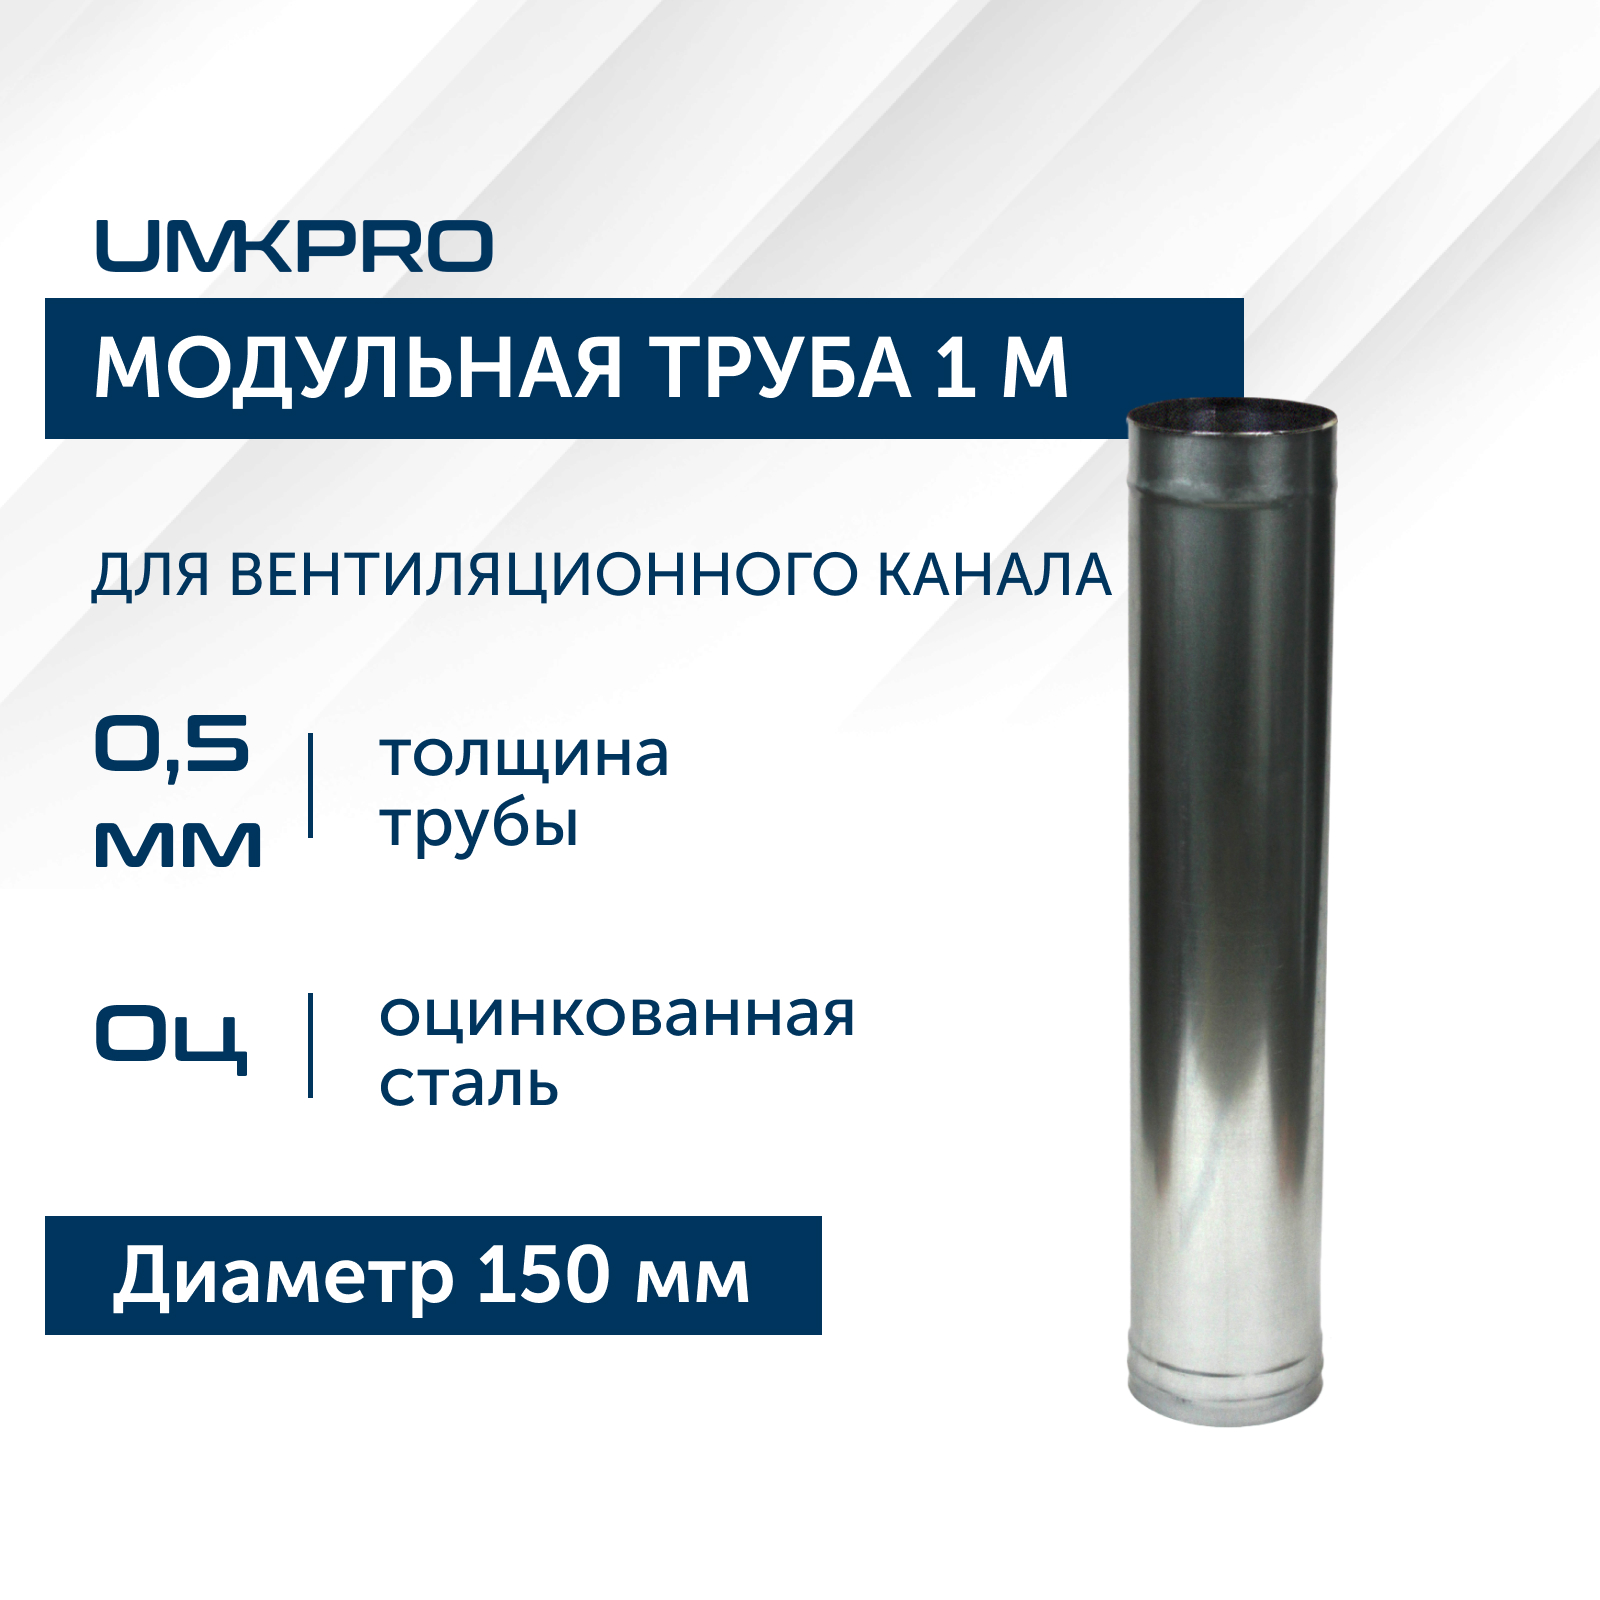 Труба модульная для дымохода 1 м UMKPRO, D 150, Оц/0,5мм модульная прихожая горизонт 18